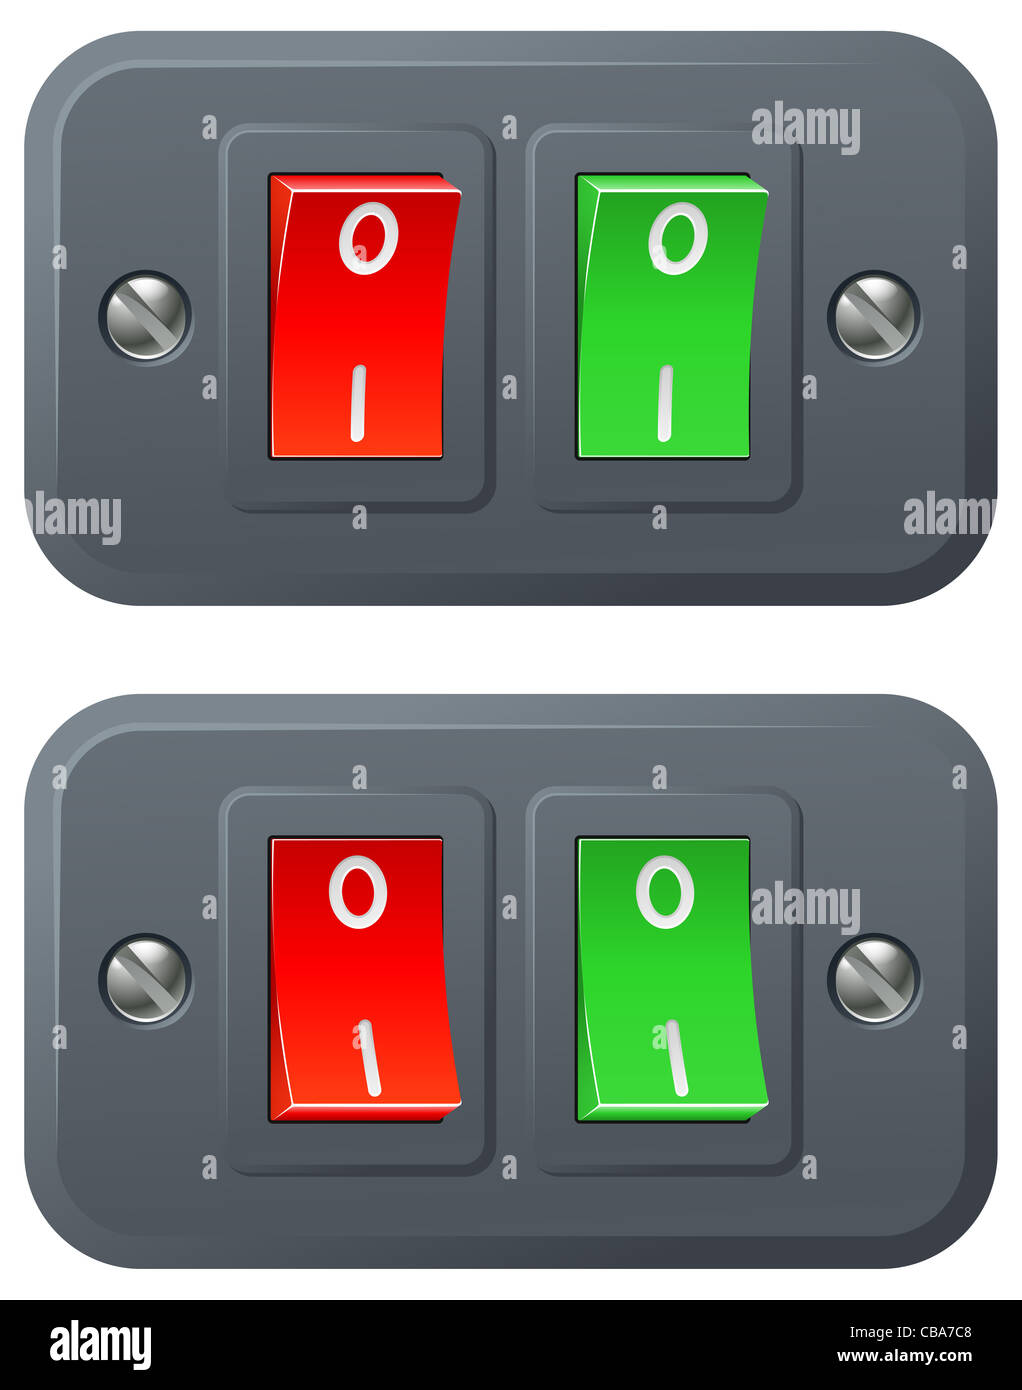 Illustrazione del rosso e del verde degli interruttori in posizione di accensione e spegnimento Foto Stock